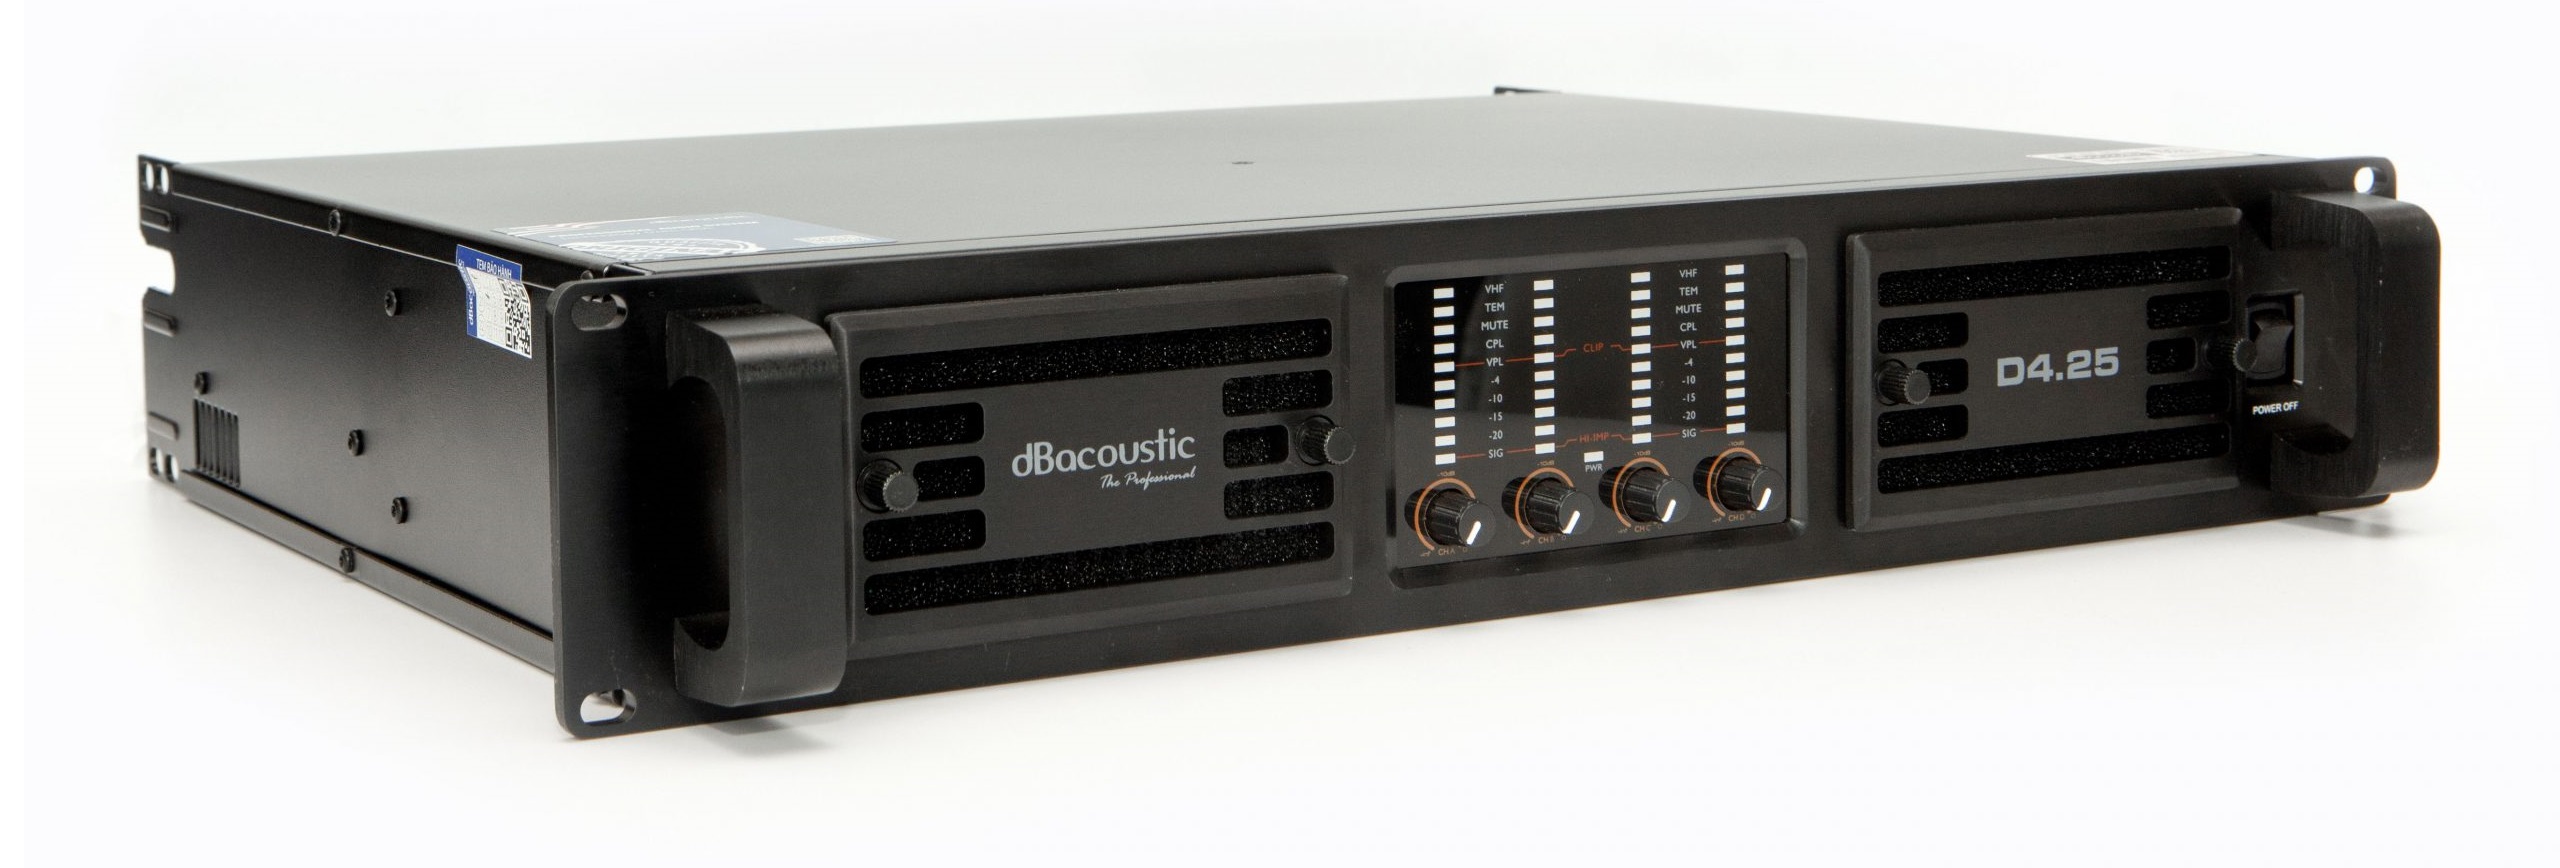 Cục đẩy DB Acoustic 4 kênh D4.15 với thiết kế tinh xảo